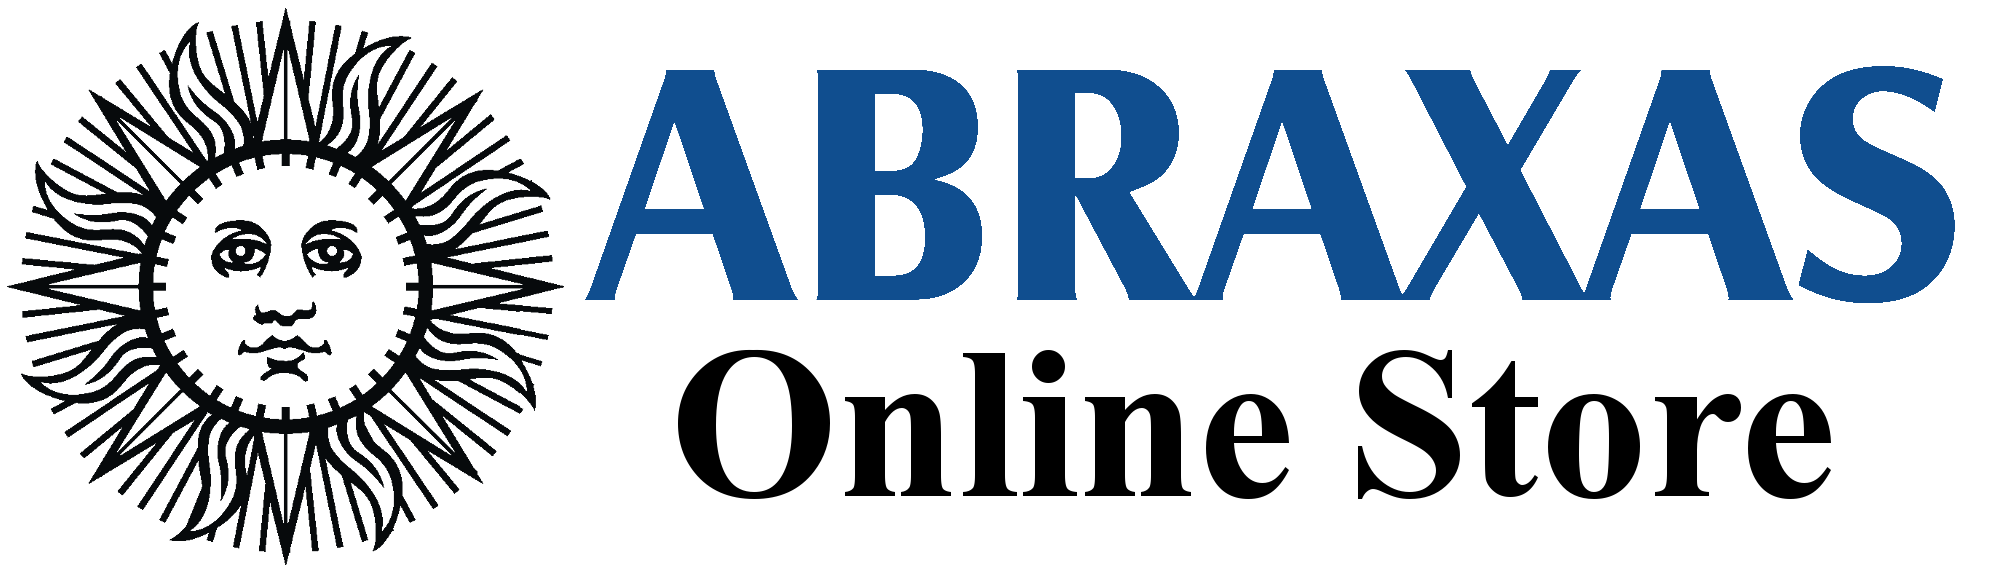 Abraxas Online Store